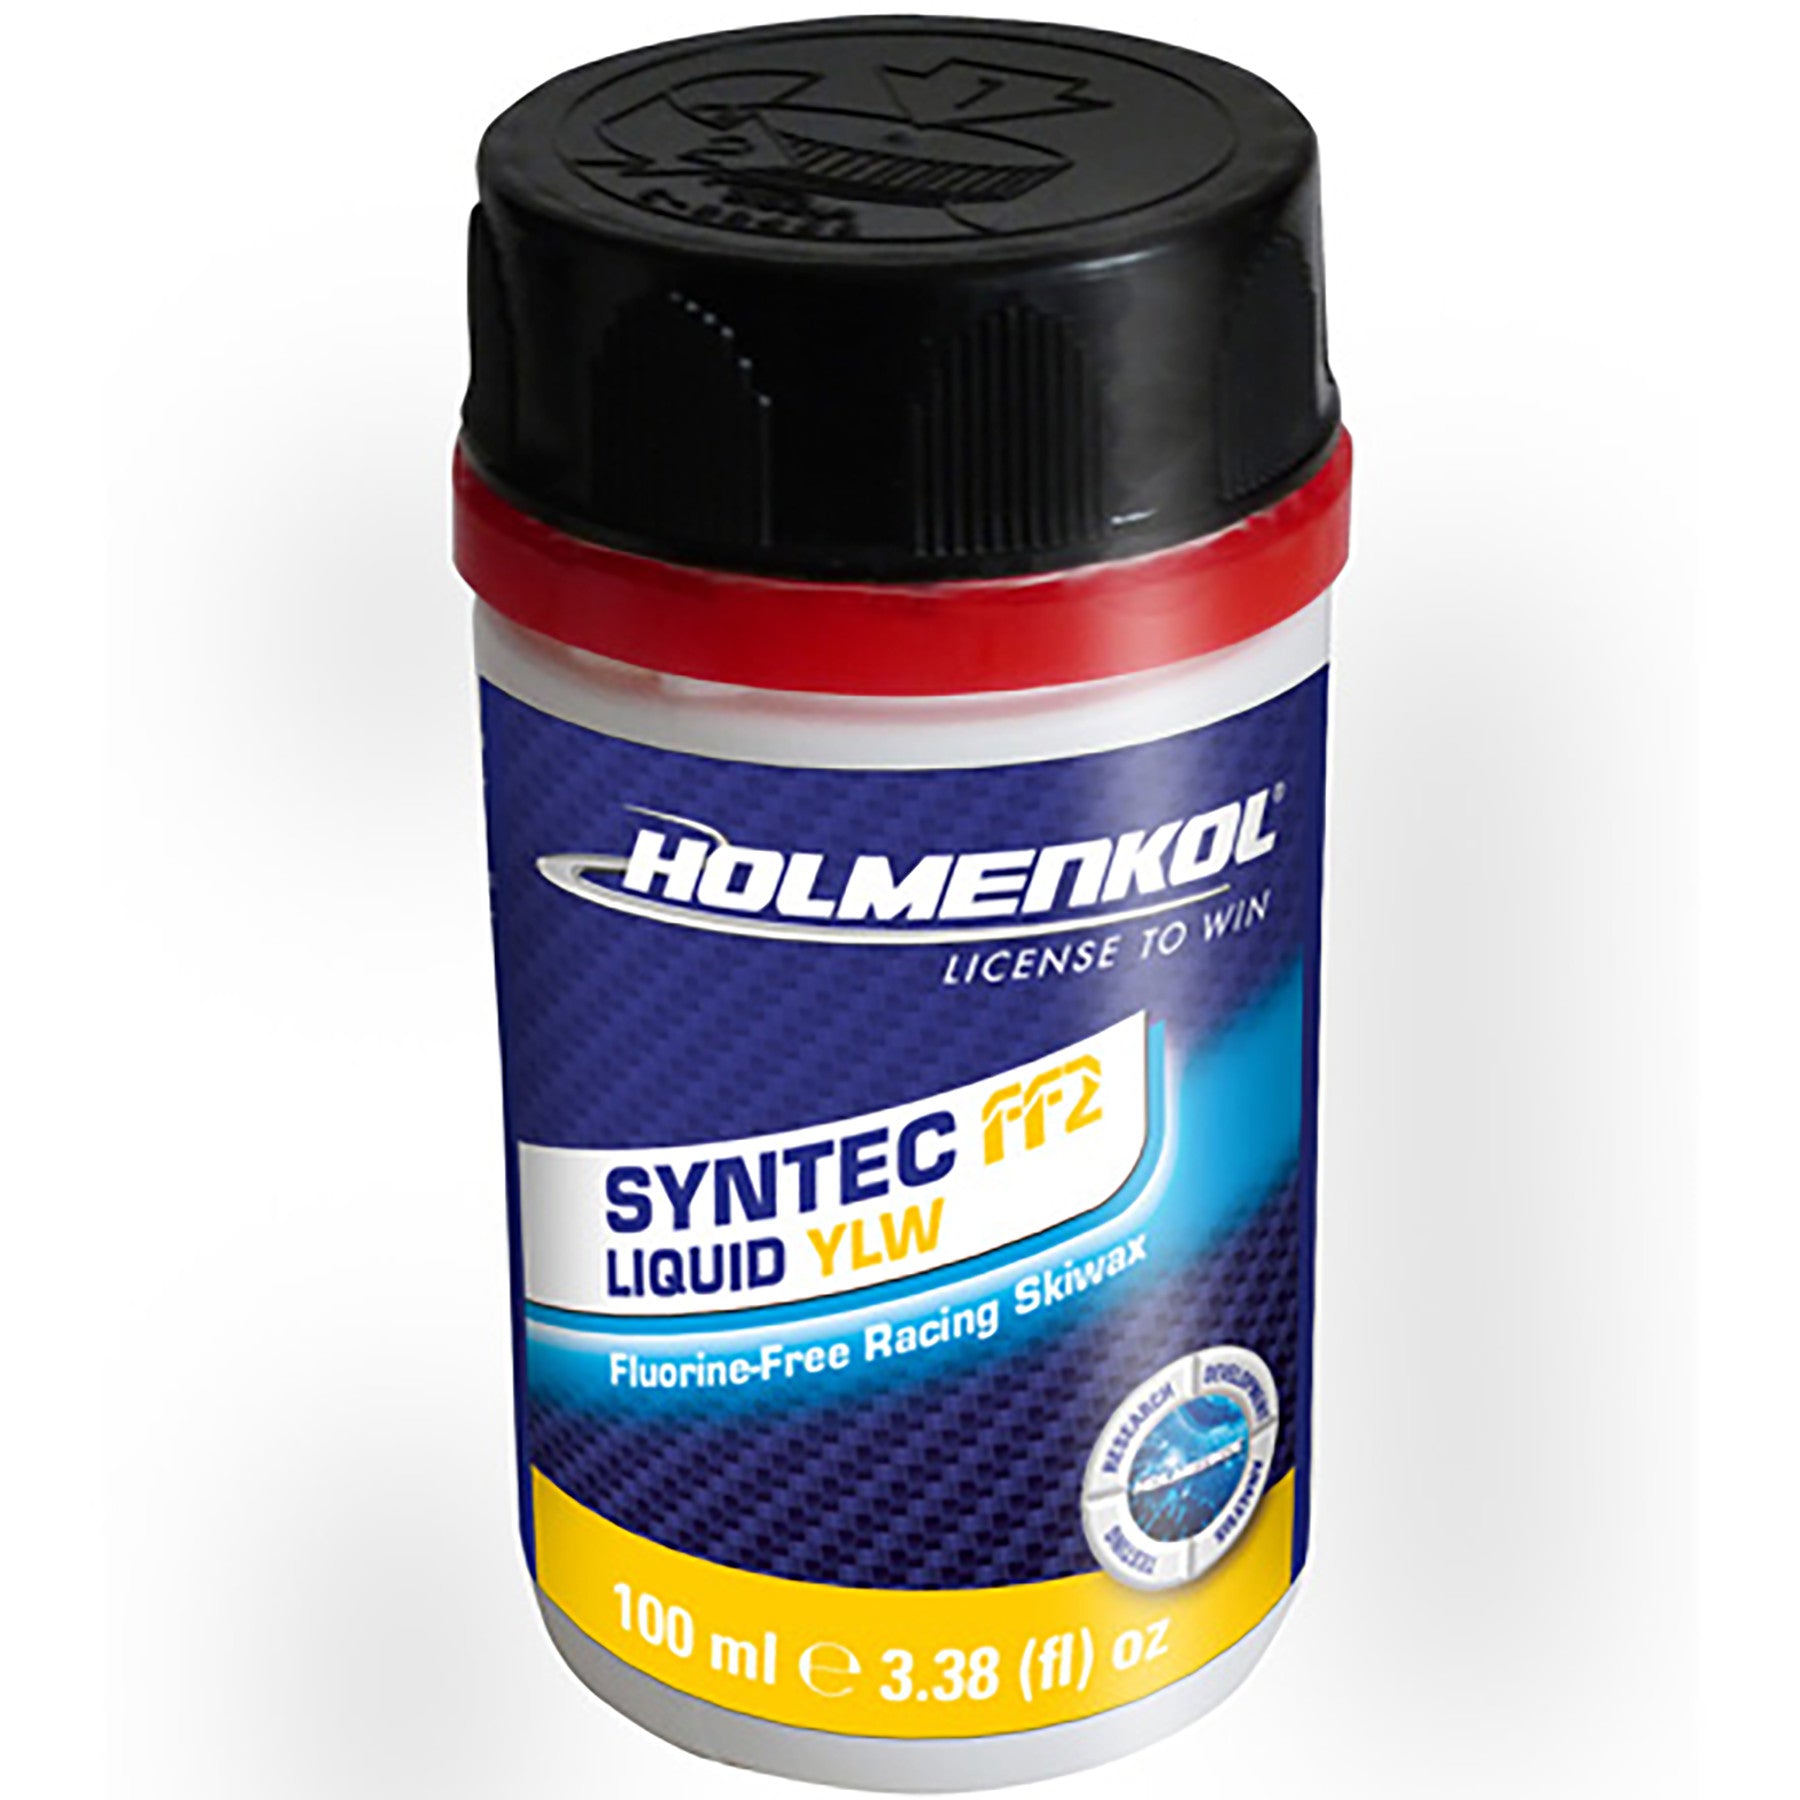 Holmenkol Syntec FF2 Liquid Wax